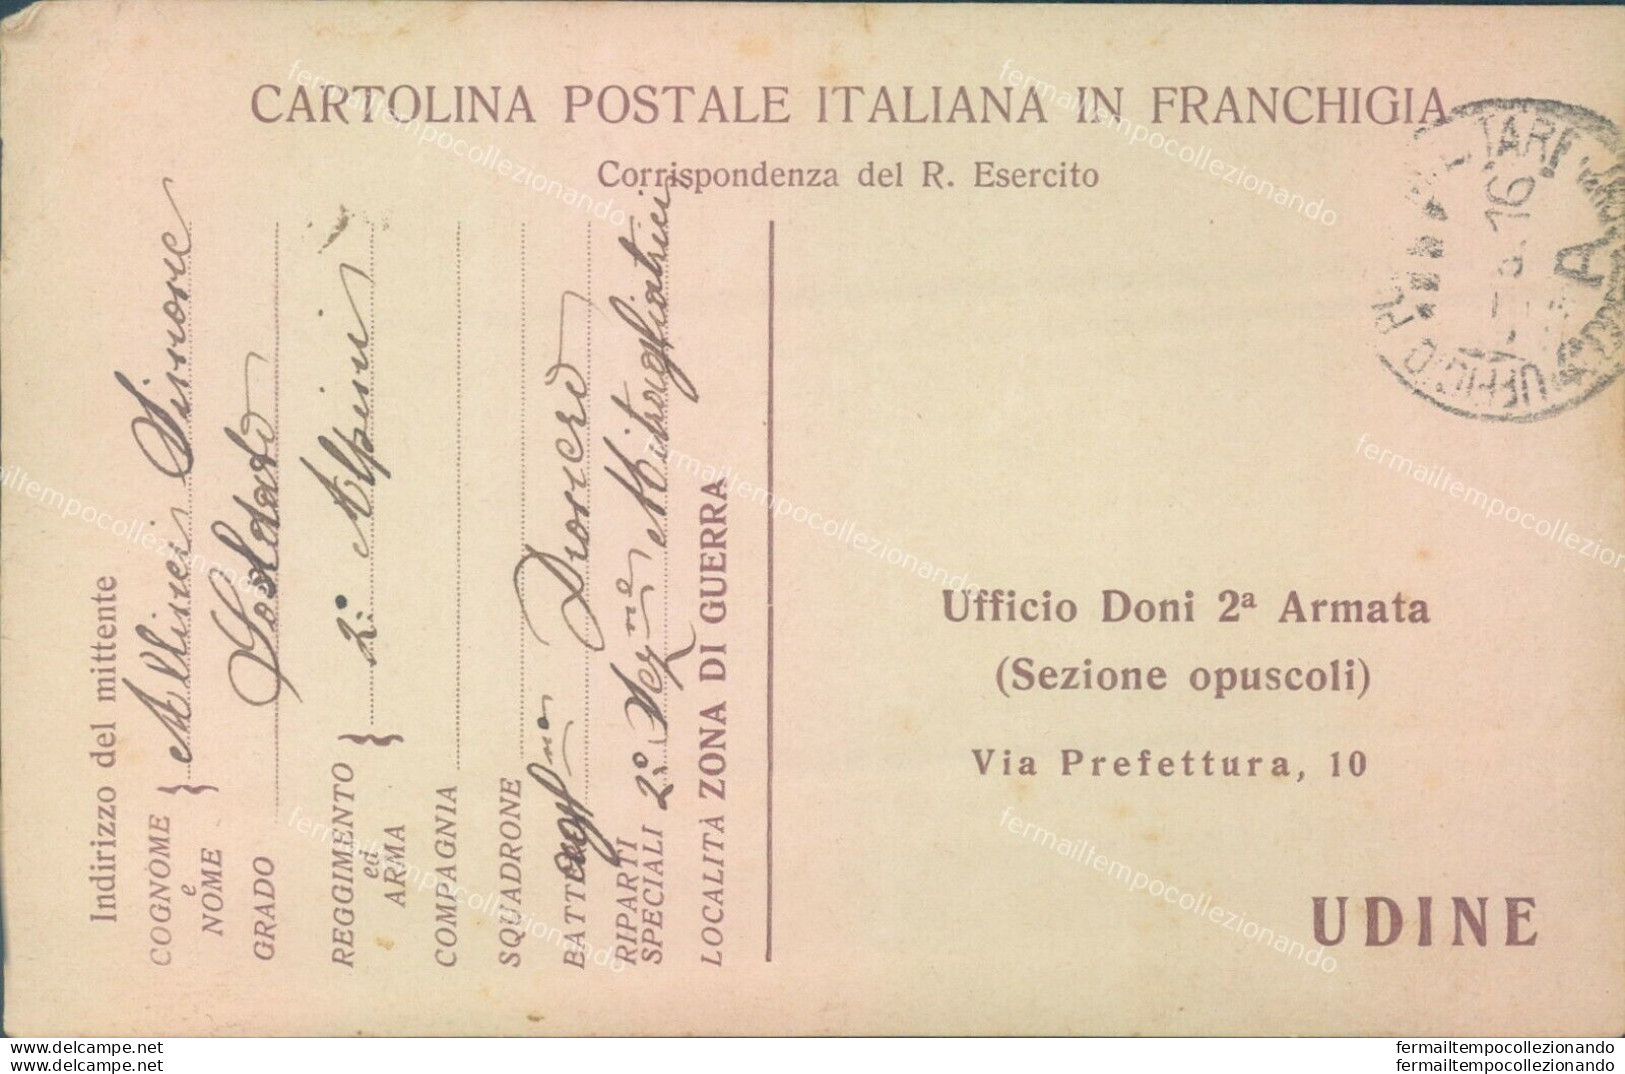 T134 Cartolina In Franchigia Ufficio Doni 2 Armata Udine 1916 - Franchise